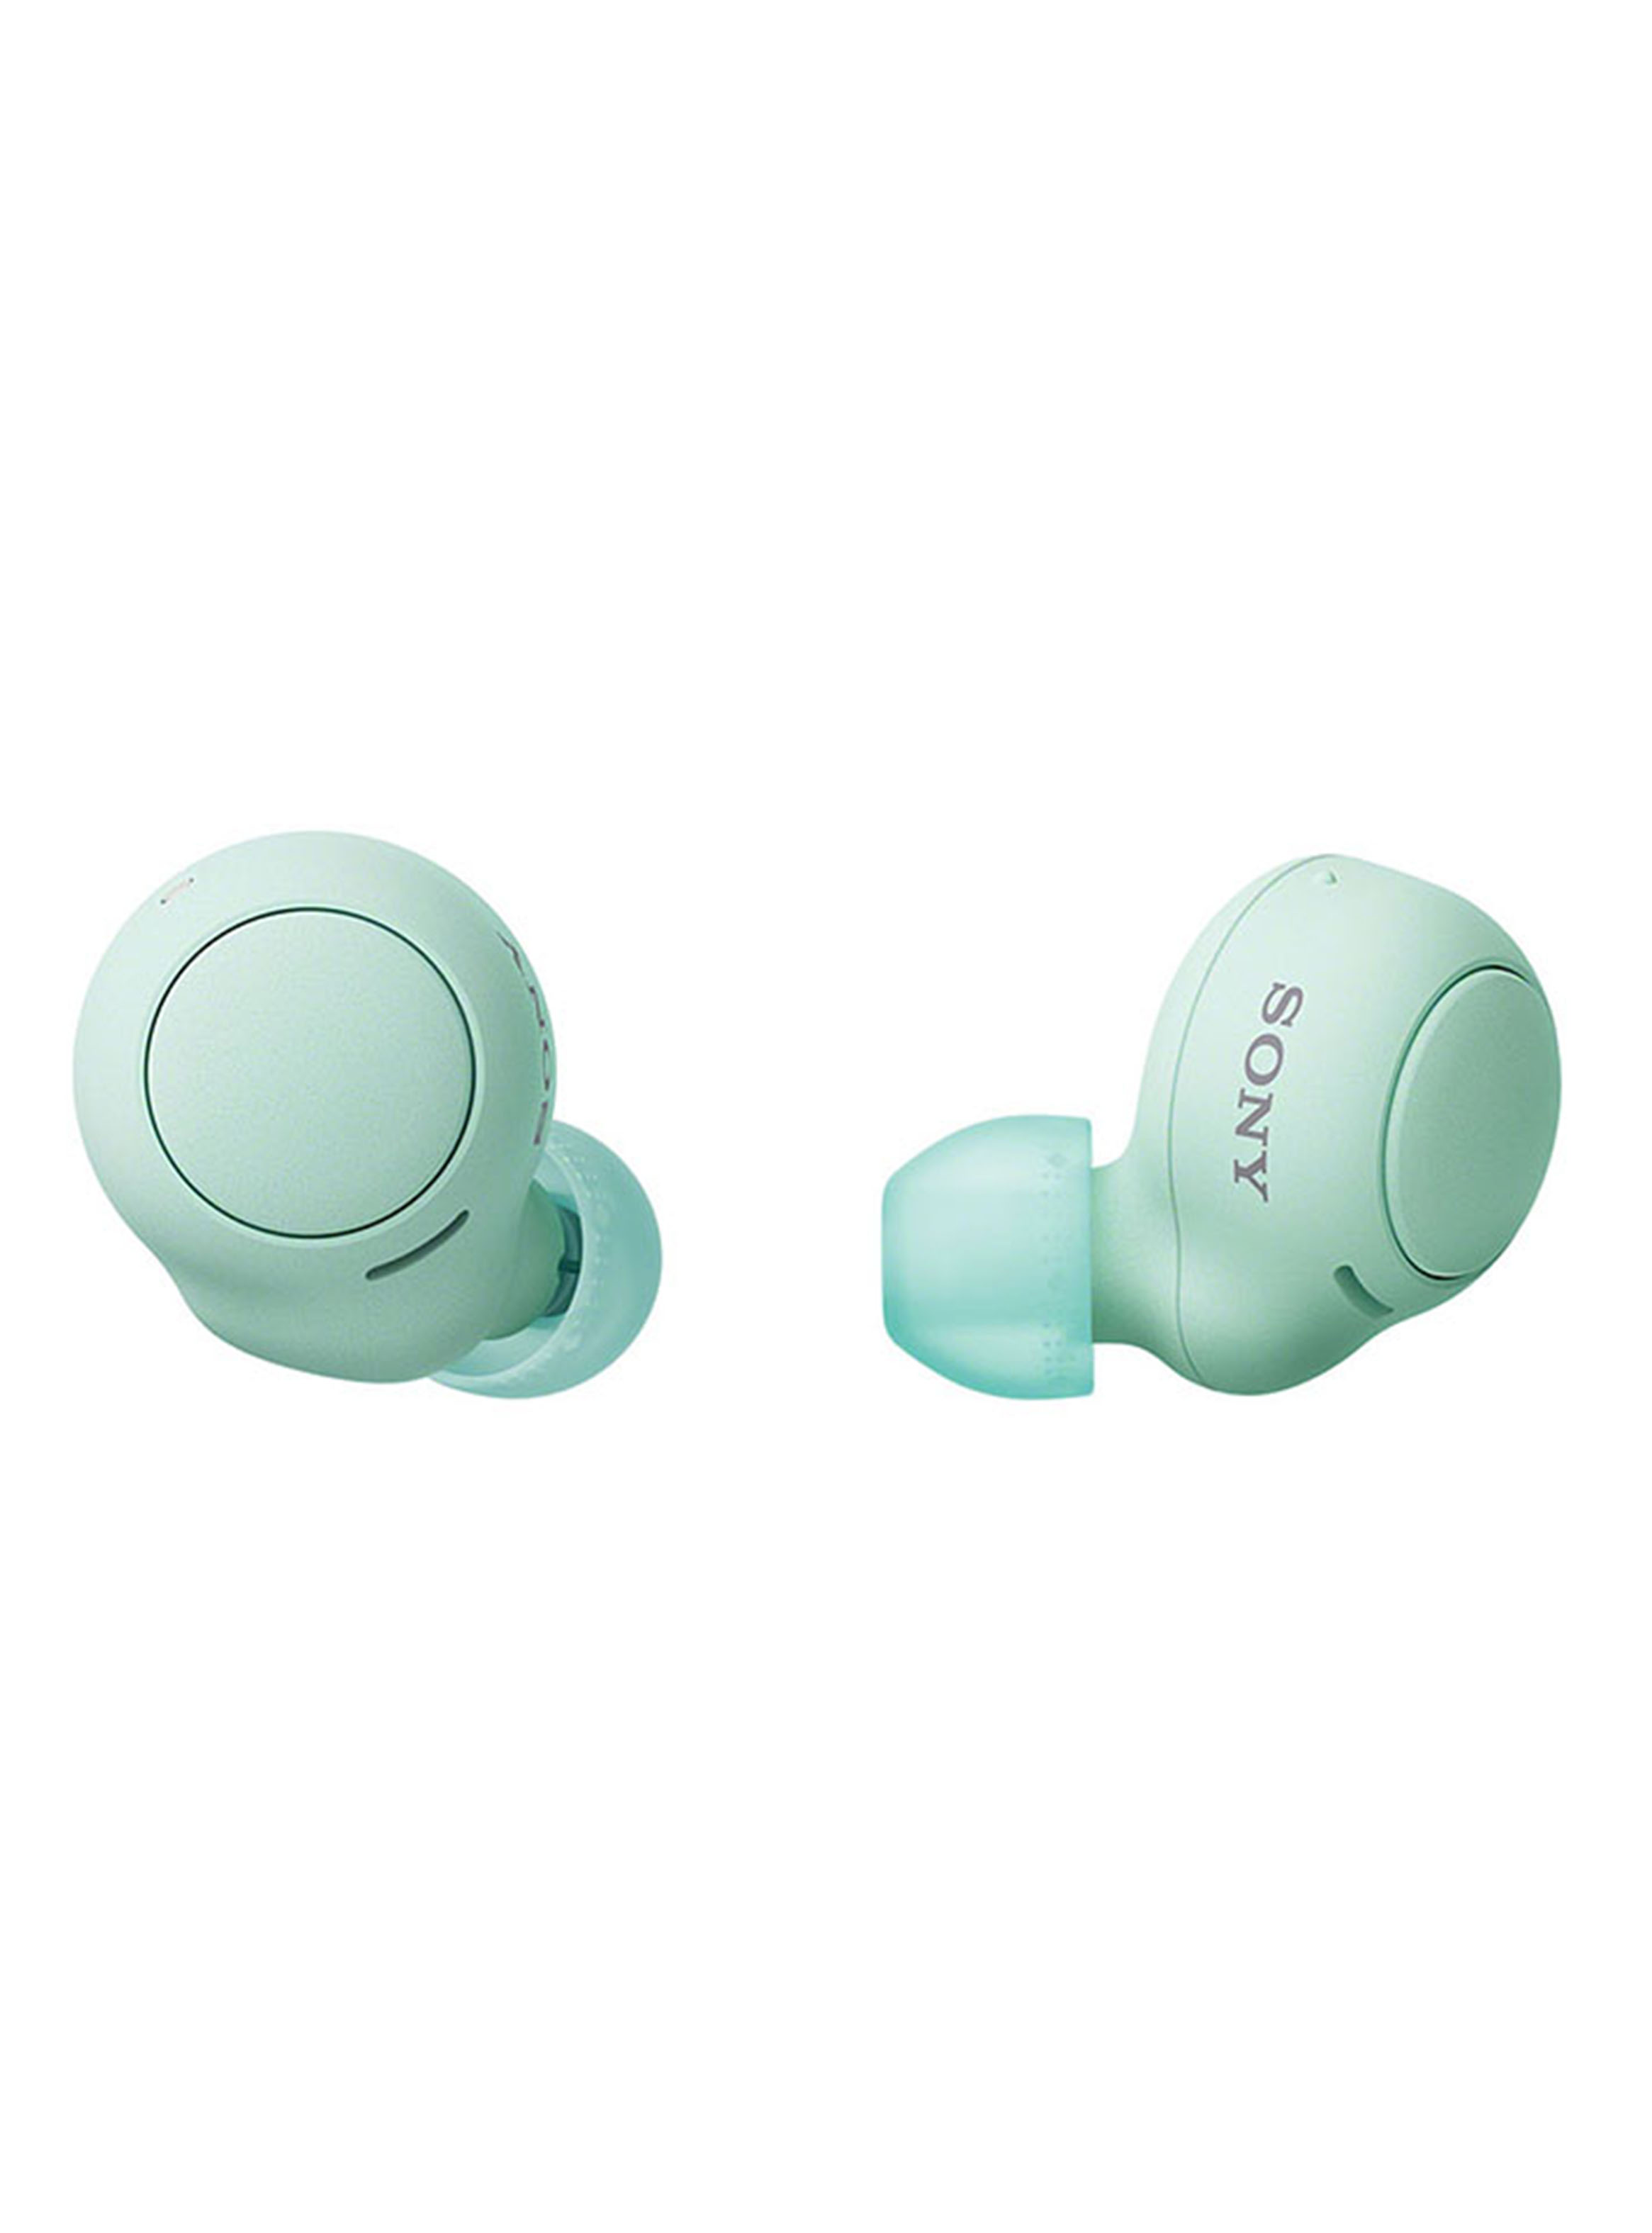 Audífonos Earbuds Bluetooth Wf-C500 Verde - Sony